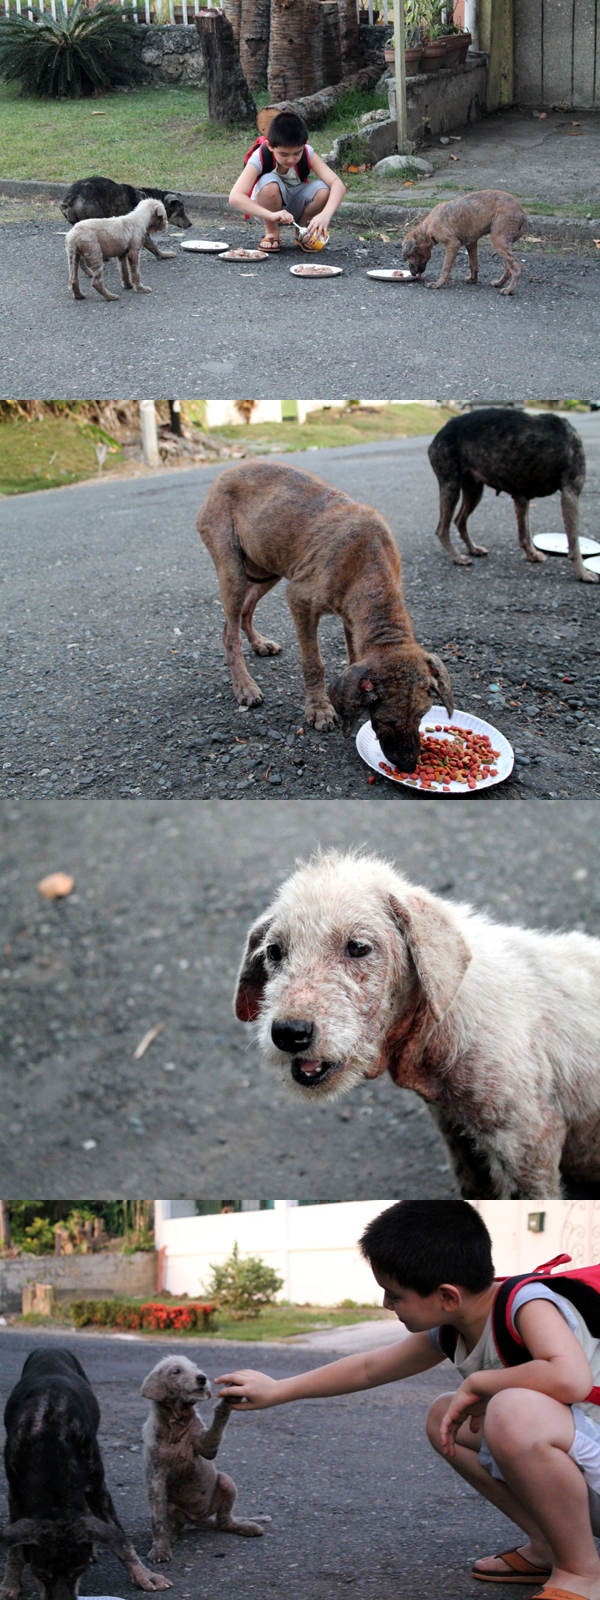 
Một cậu bé người Philippines mỗi ngày đều đem thức ăn cho 4 chú chó hoang đói khát (trong đó 1 con đã bị bắt cóc) sống gần nhà. Sau khi biết việc làm của con trai, bố cậu bé liền xây cho cậu một chuồng chó trong gara nhà mình để cậu dẫn 3 chú chó còn lại về nhà chăm sóc.